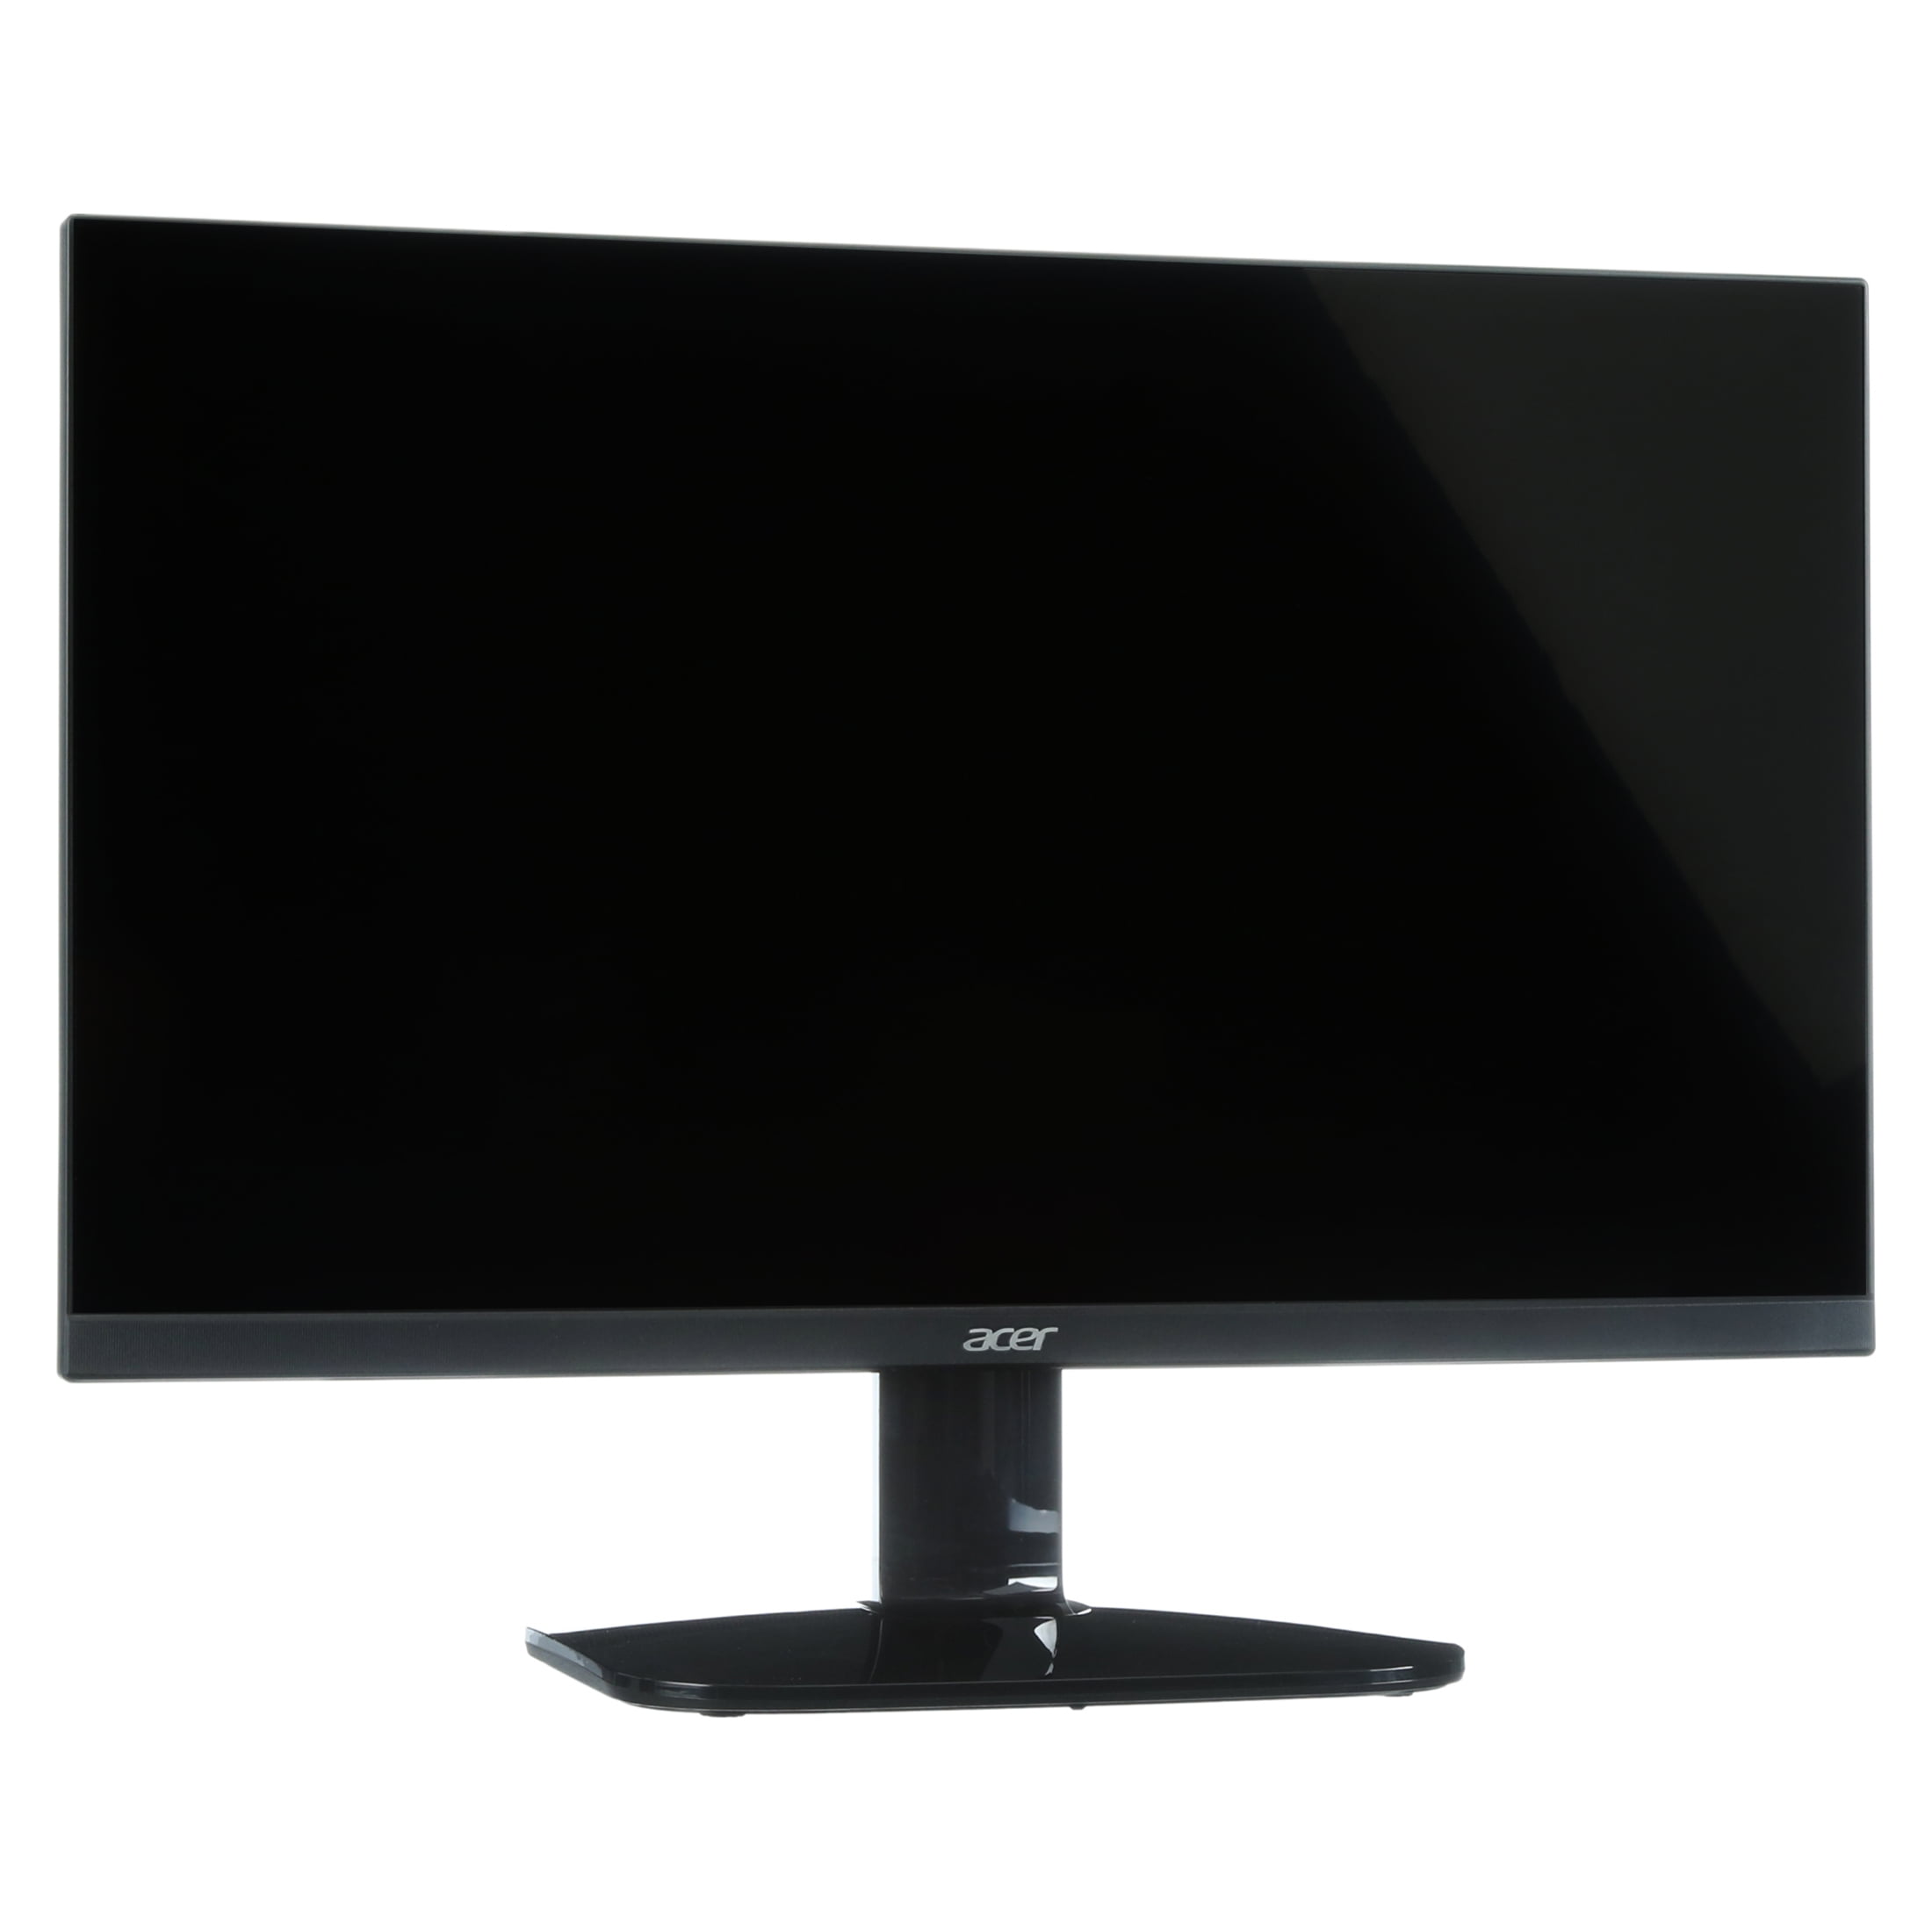 Acer KCY Abi .8 inch Full HD Monitor, Black   Walmart.com